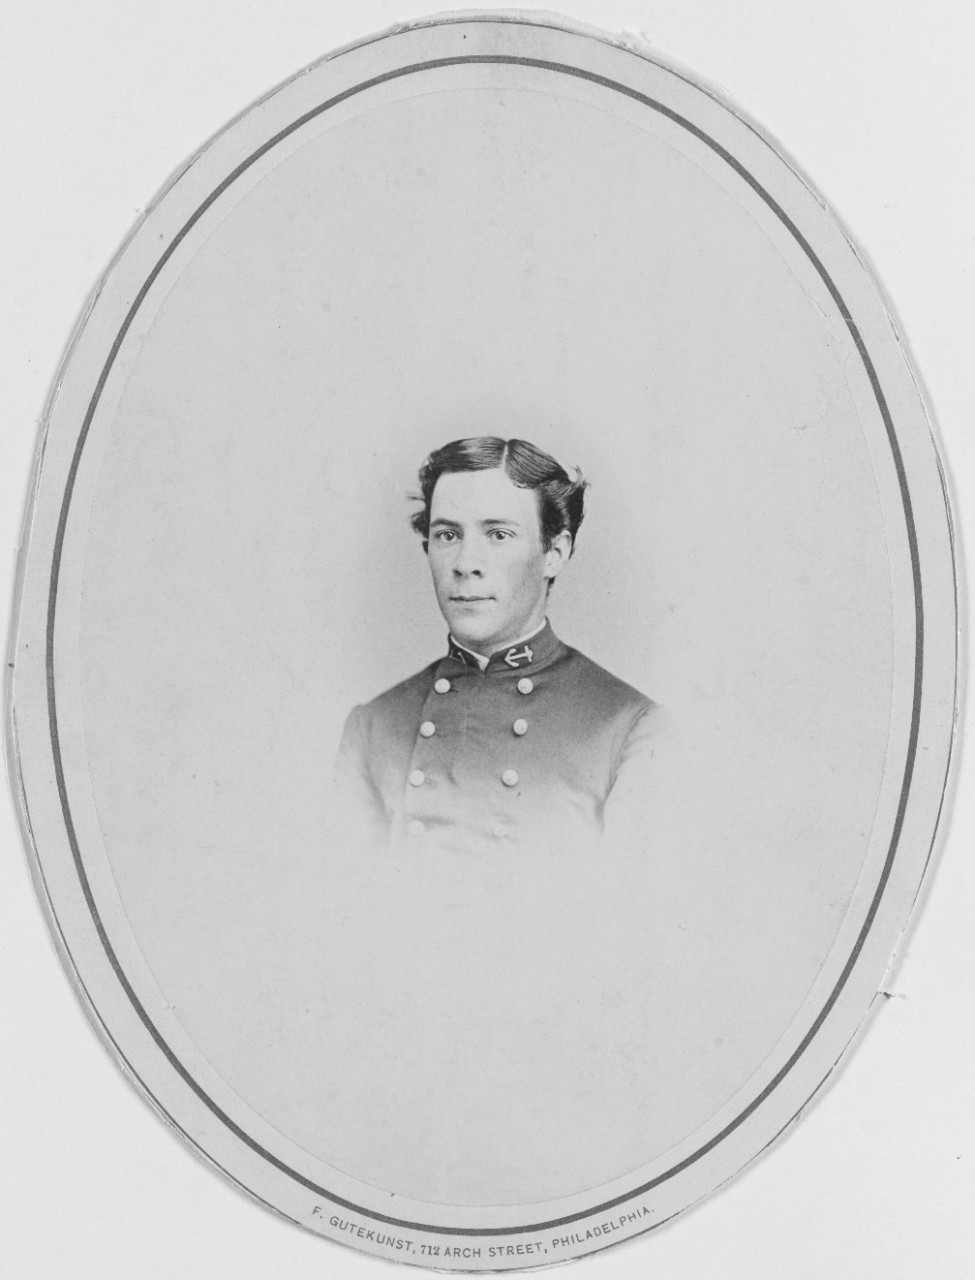 Midshipman Allen A. King